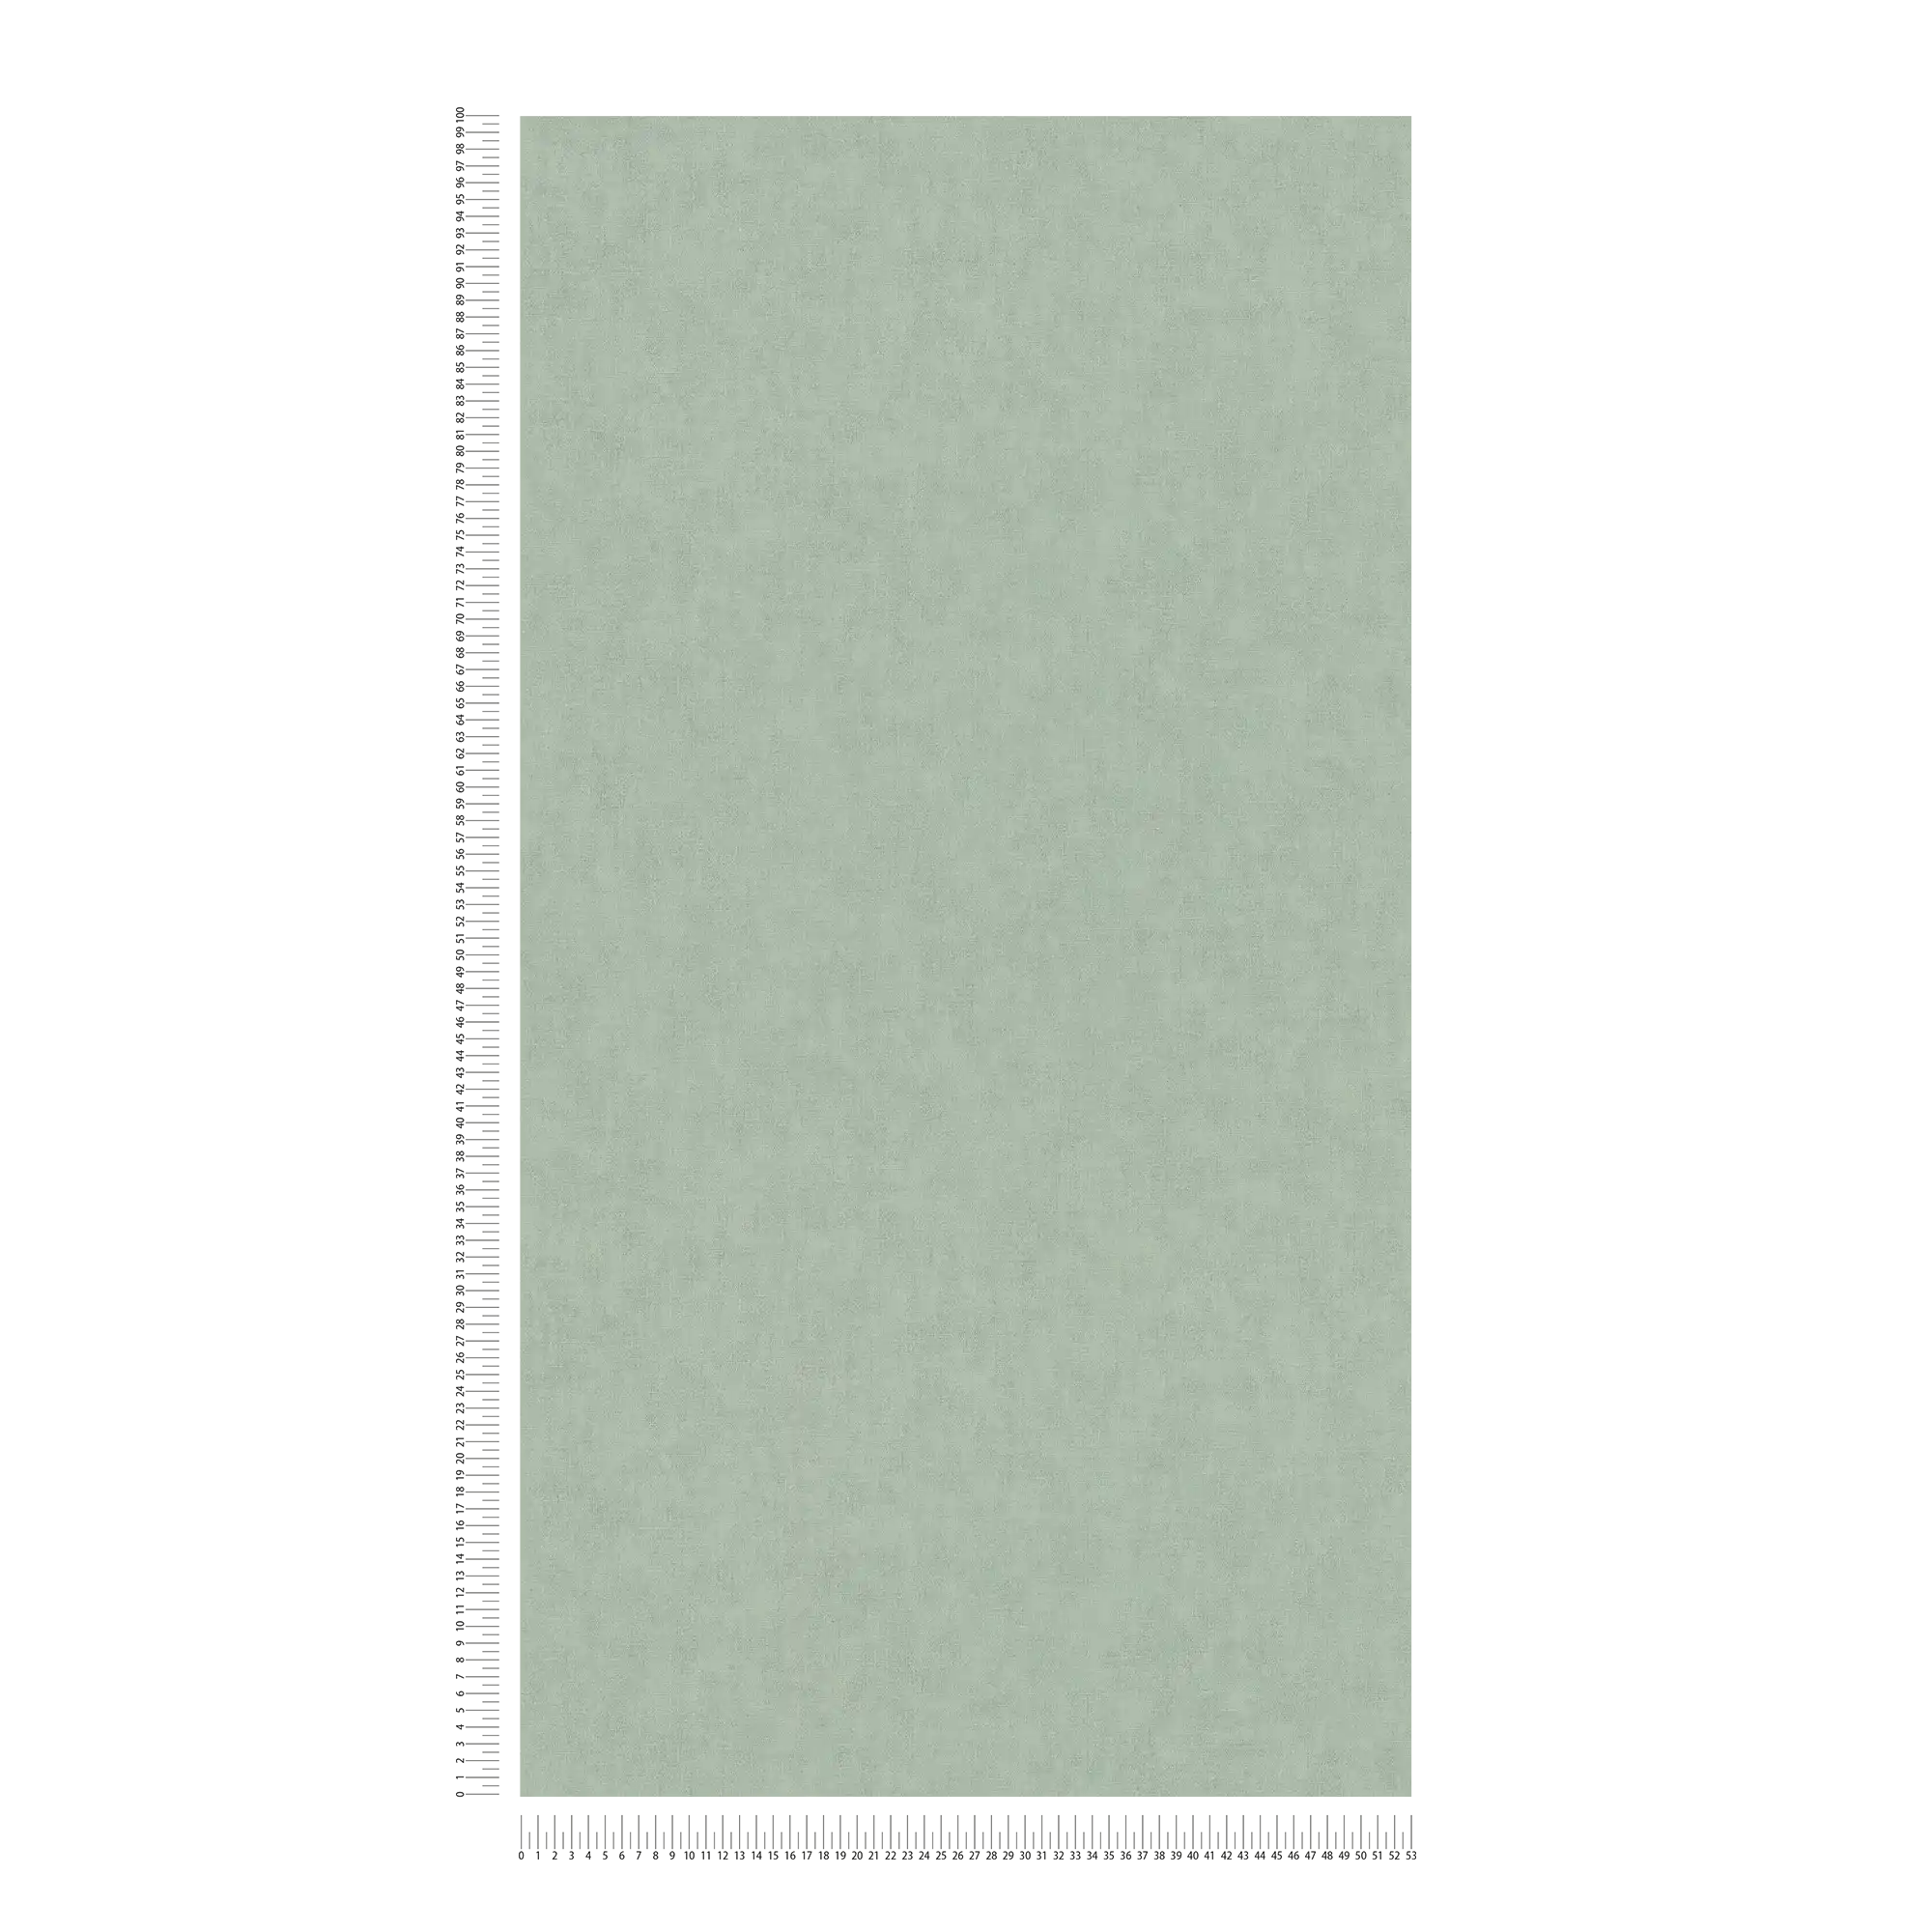             Papier peint intissé aspect textile style scandinave - gris, vert
        